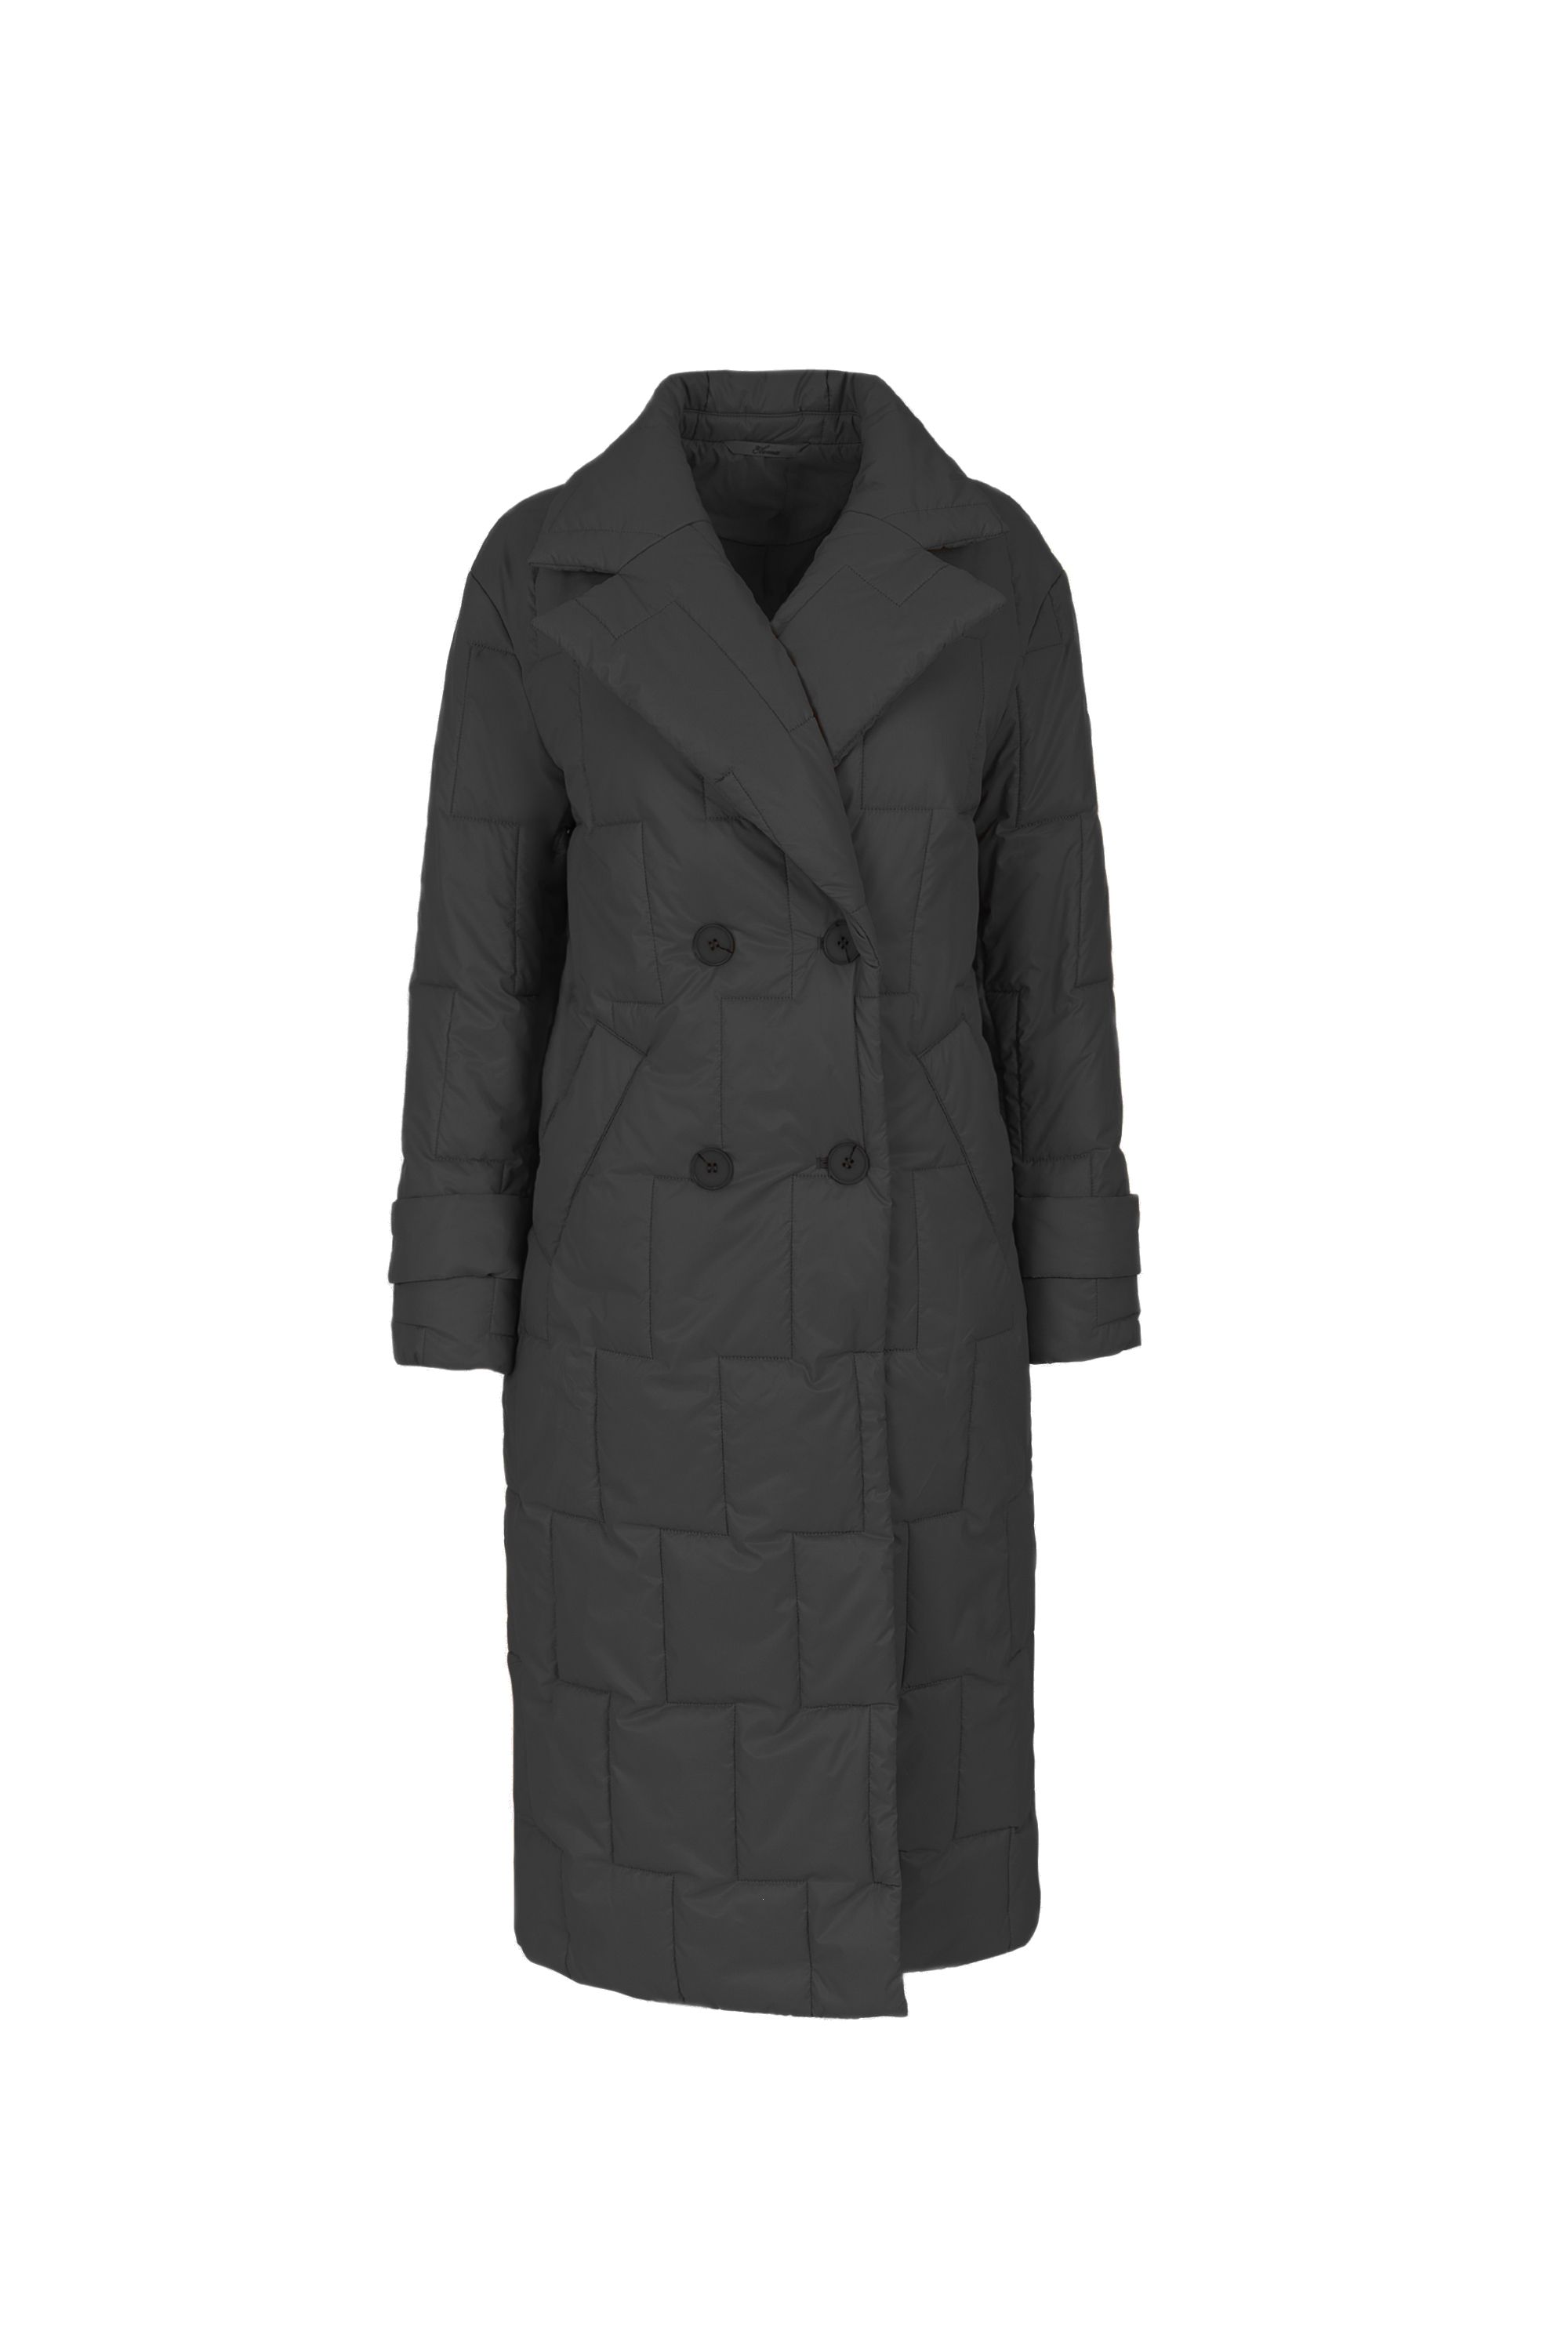 Пальто женское плащевое утепленное 5-12593-1. Фото 4.